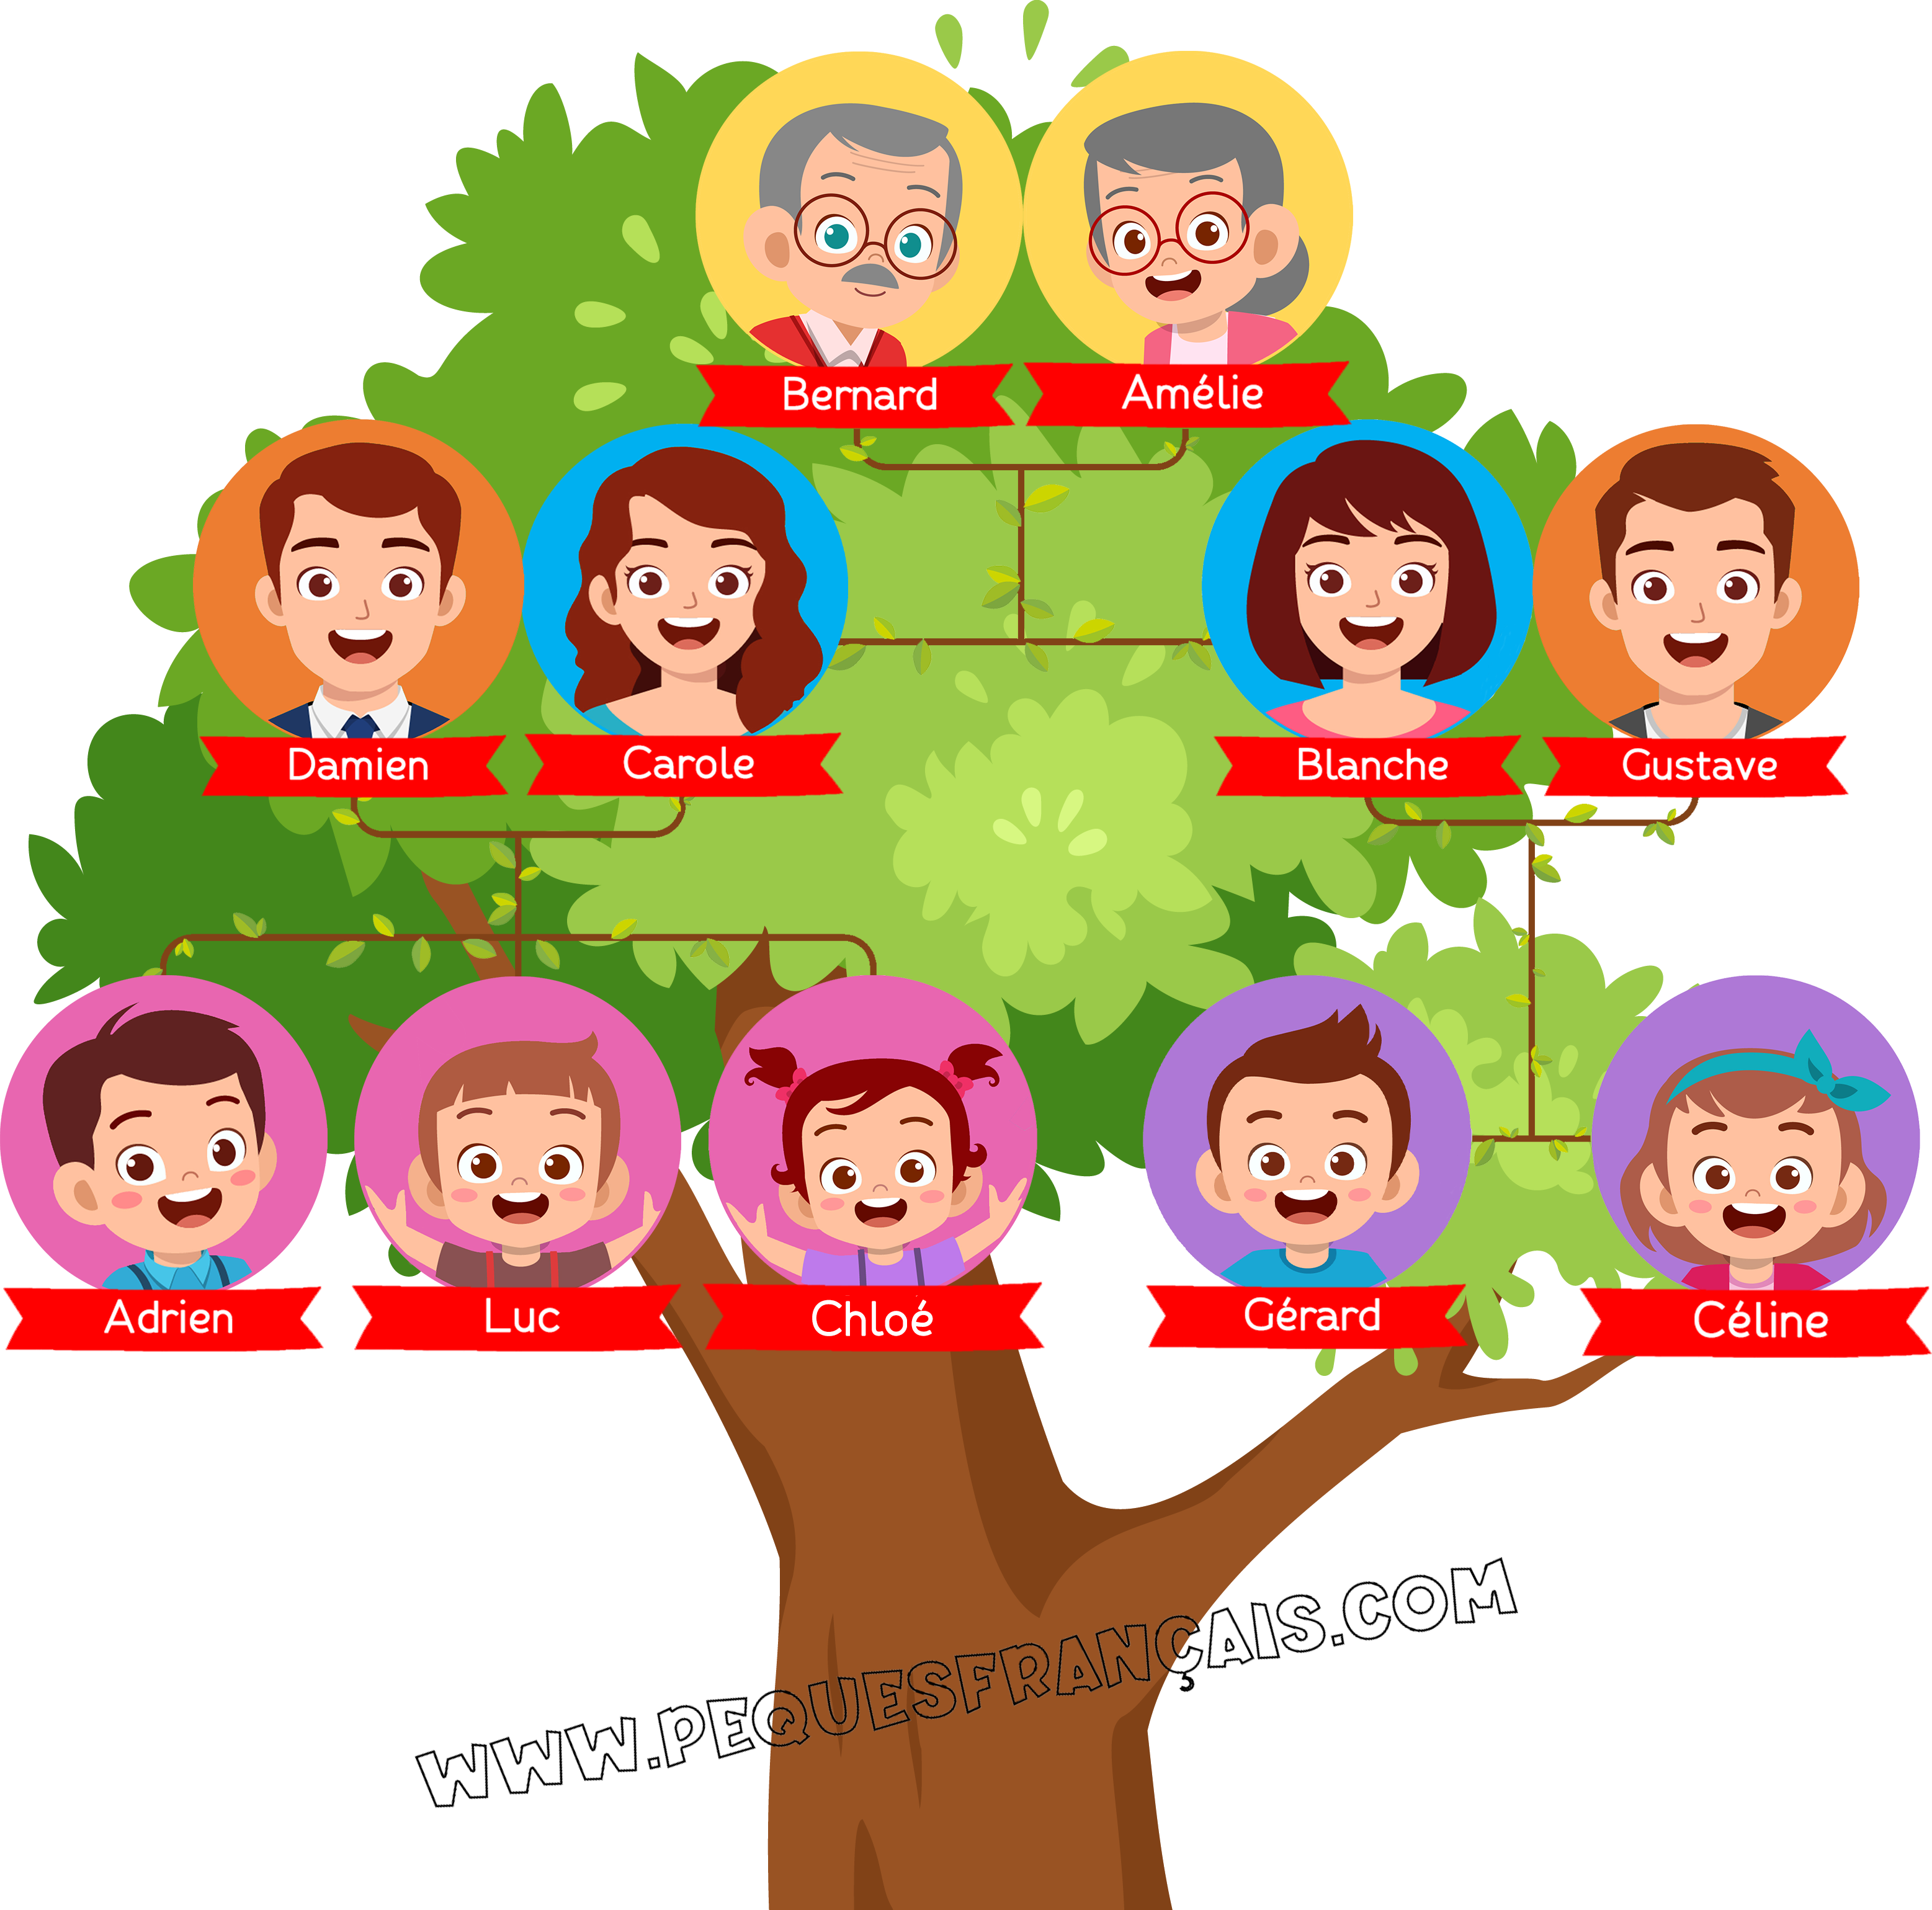 Imagen actividad la familia árbol genealógico en francés